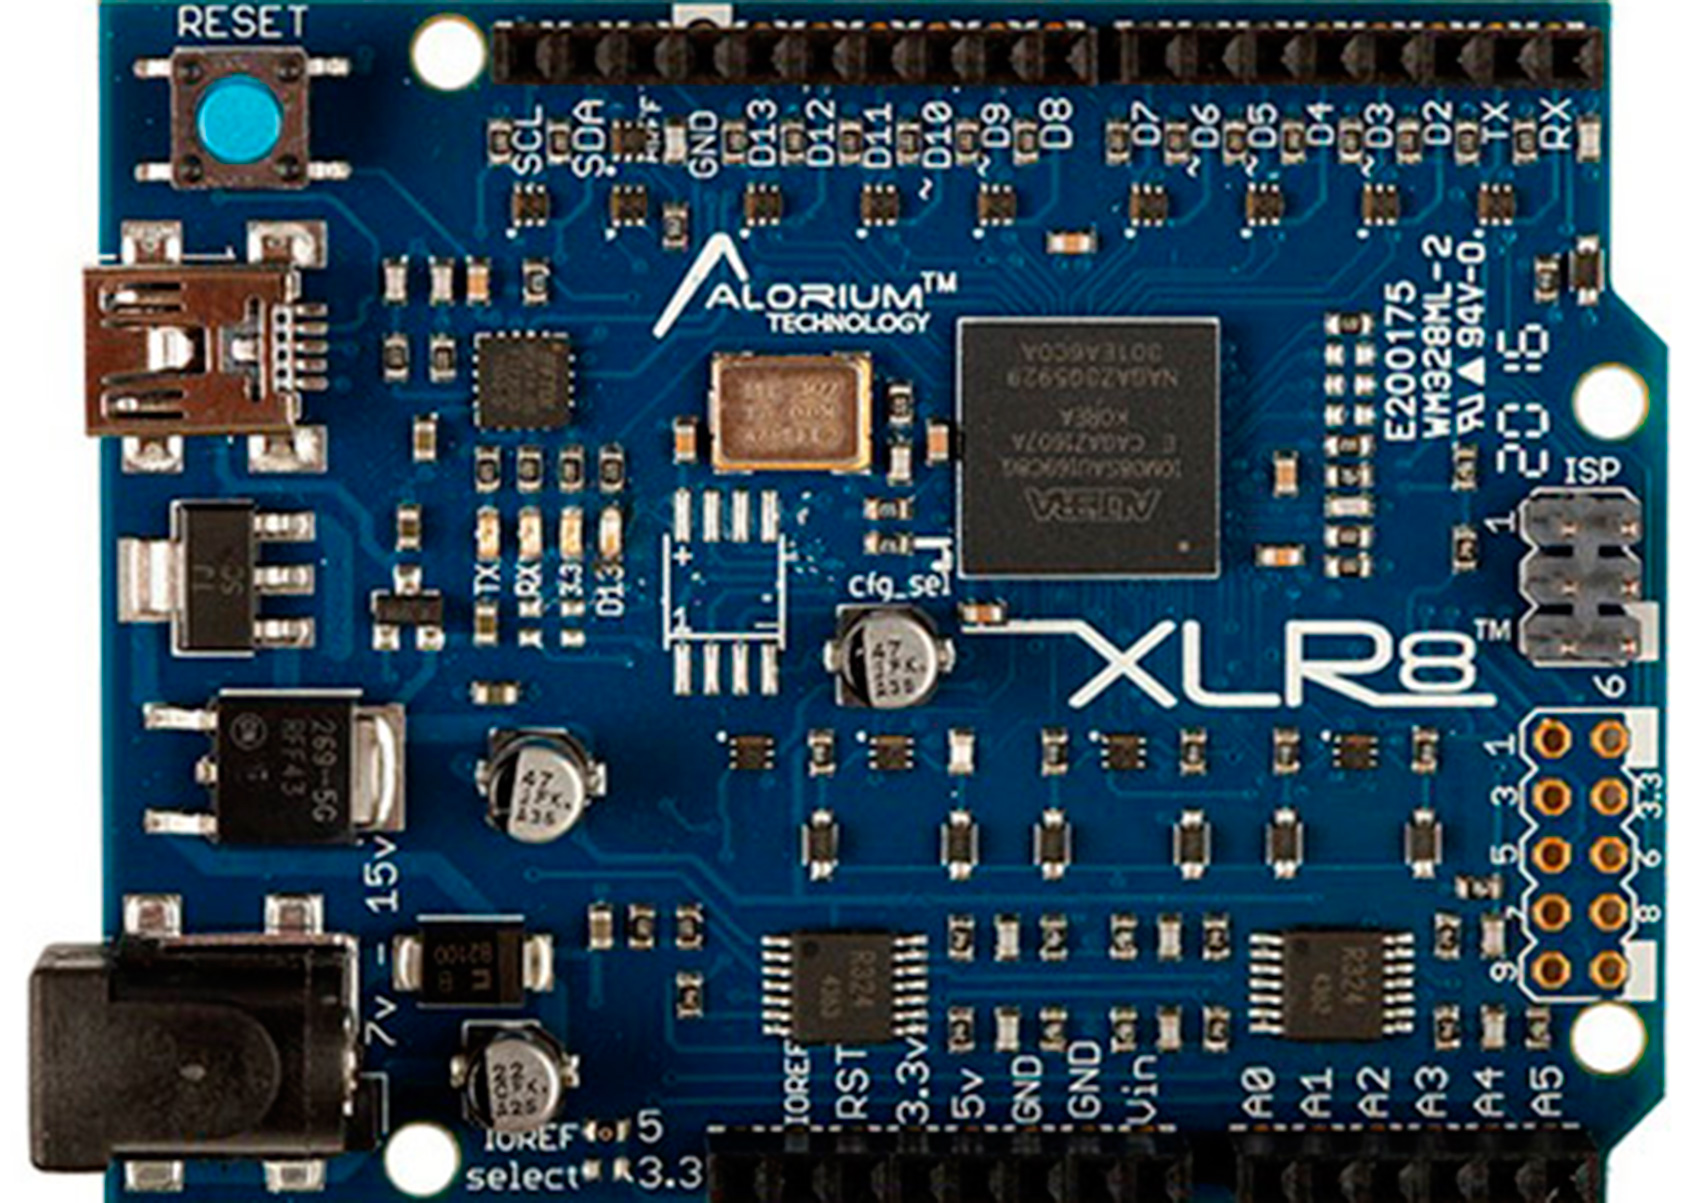 Arrow vender soluciones de Alorium basadas en FPGA, incluyendo la tarjeta de desarrollo XLR8